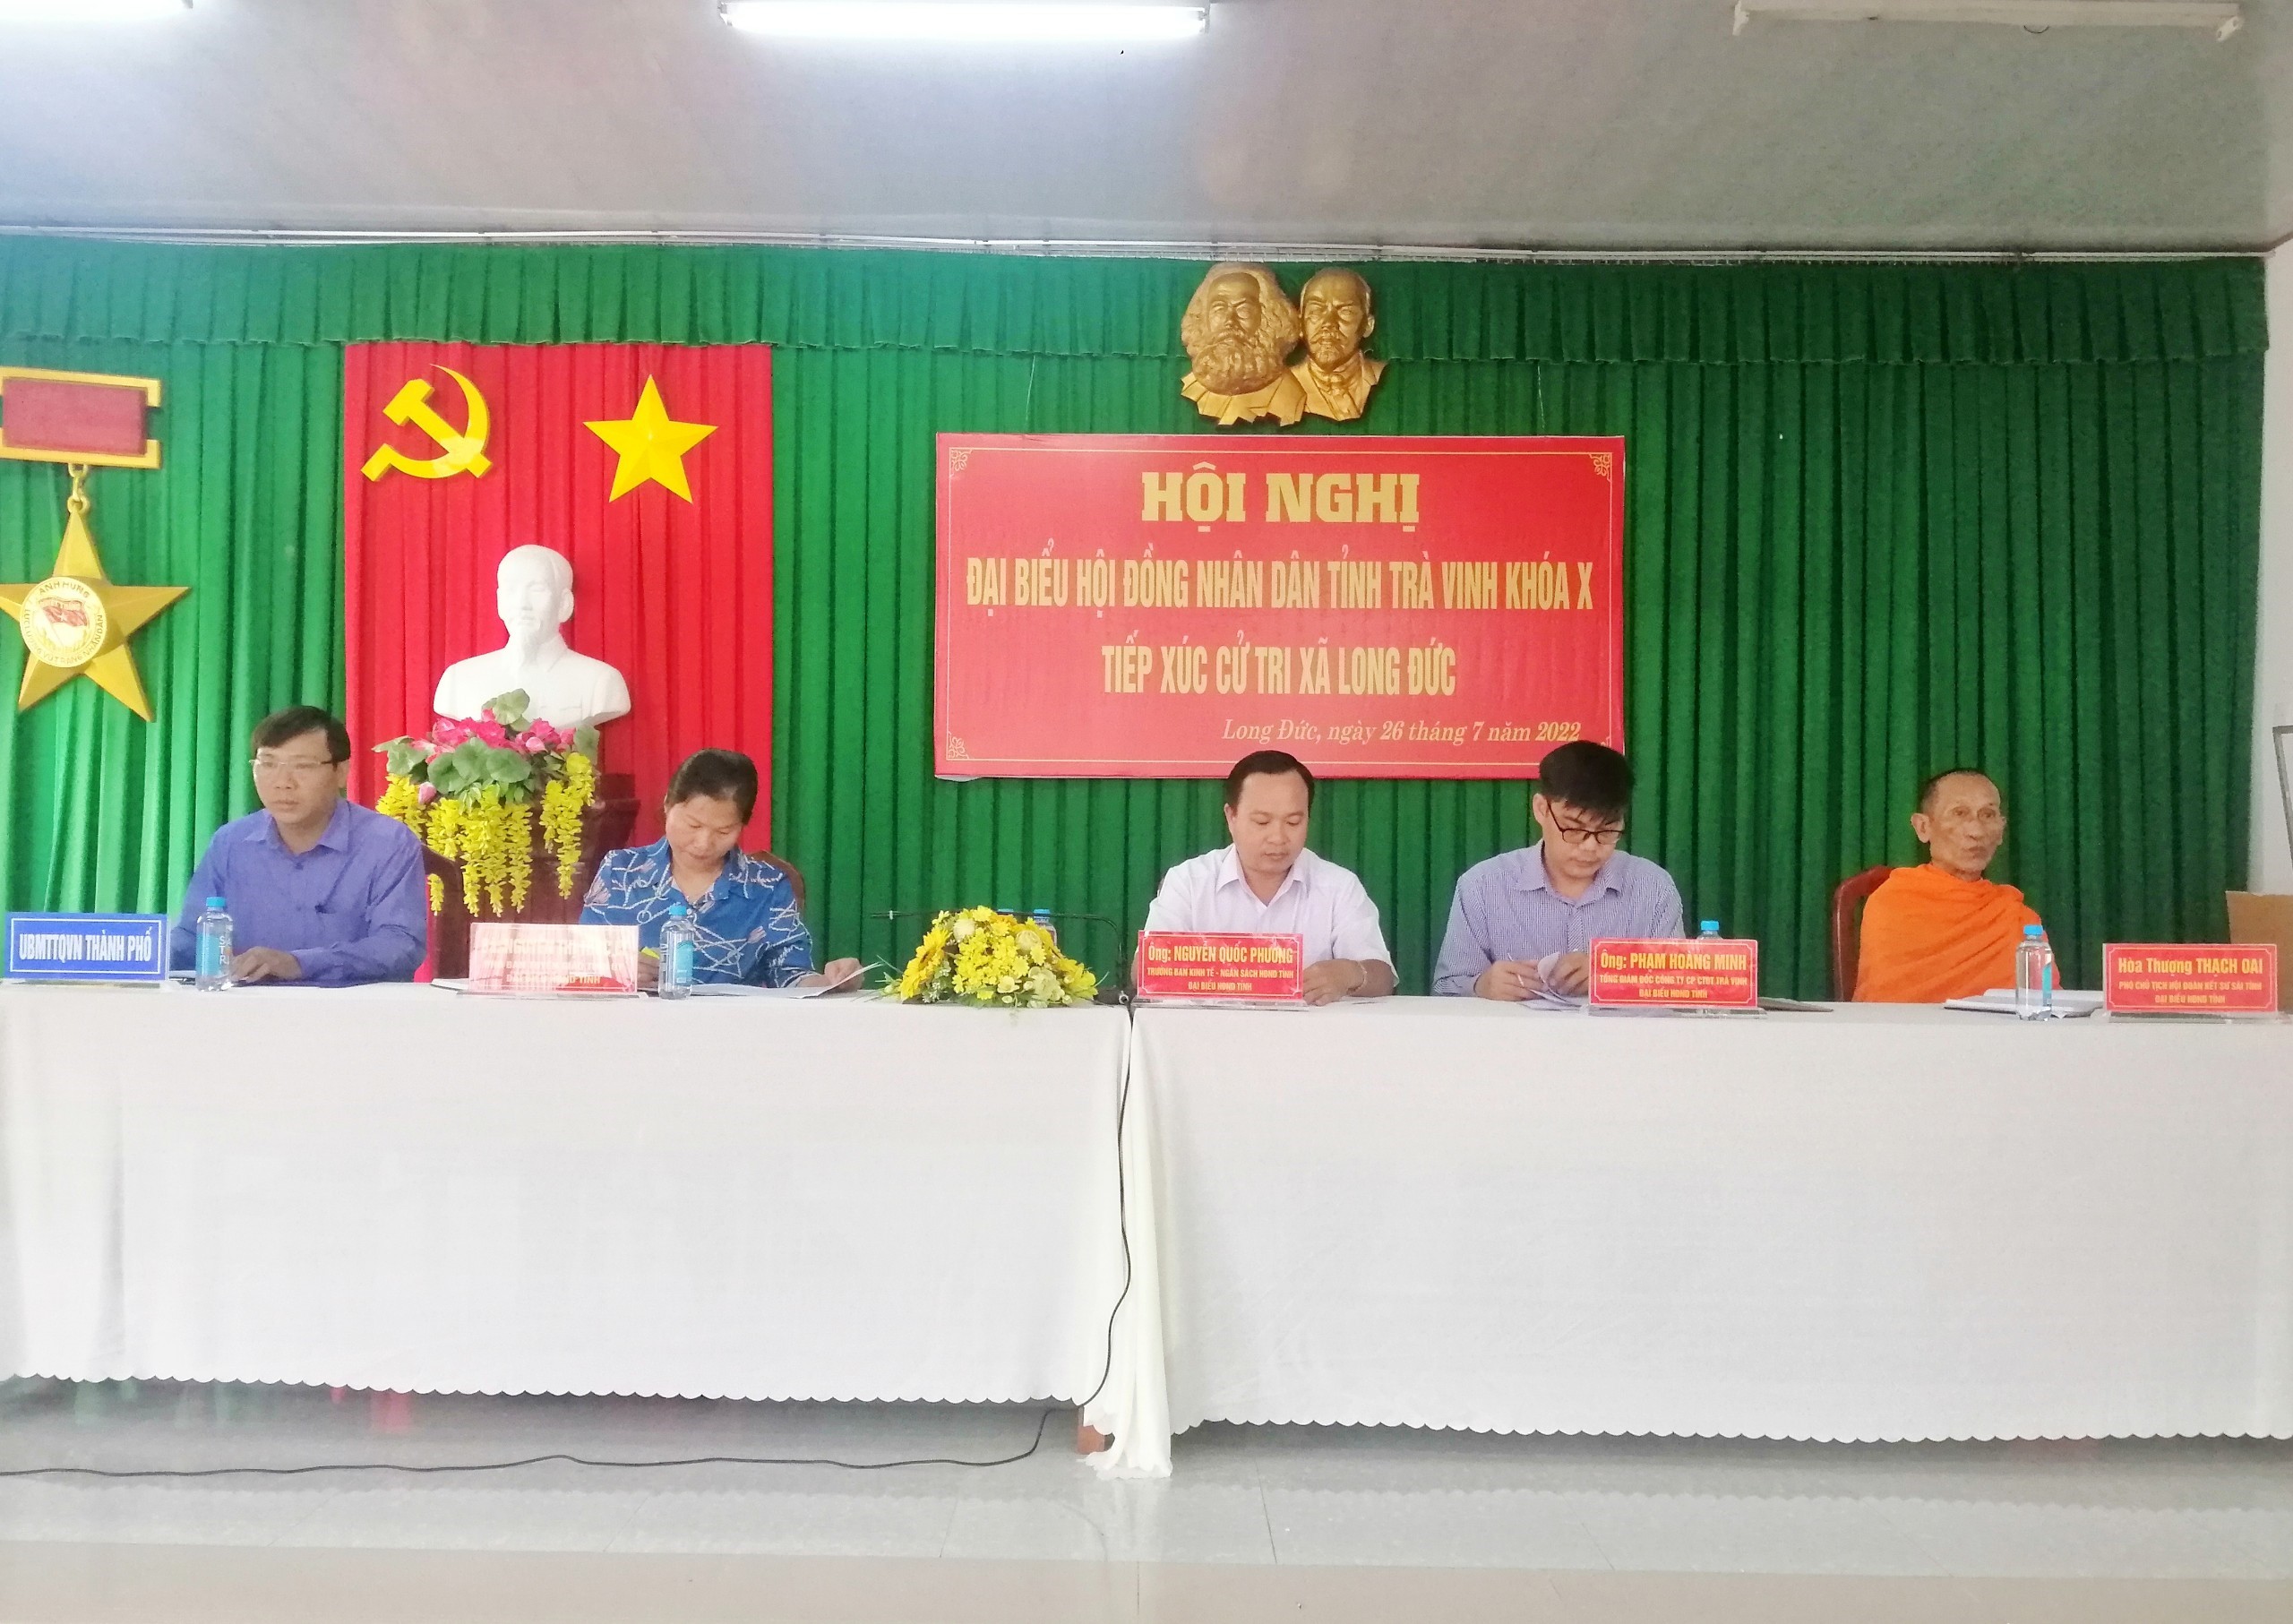 Đại biểu HĐND tỉnh Trà Vinh khoá X tiếp xúc cử tri xã Long Đức thành phố Trà Vinh sau kỳ họp thứ 5 